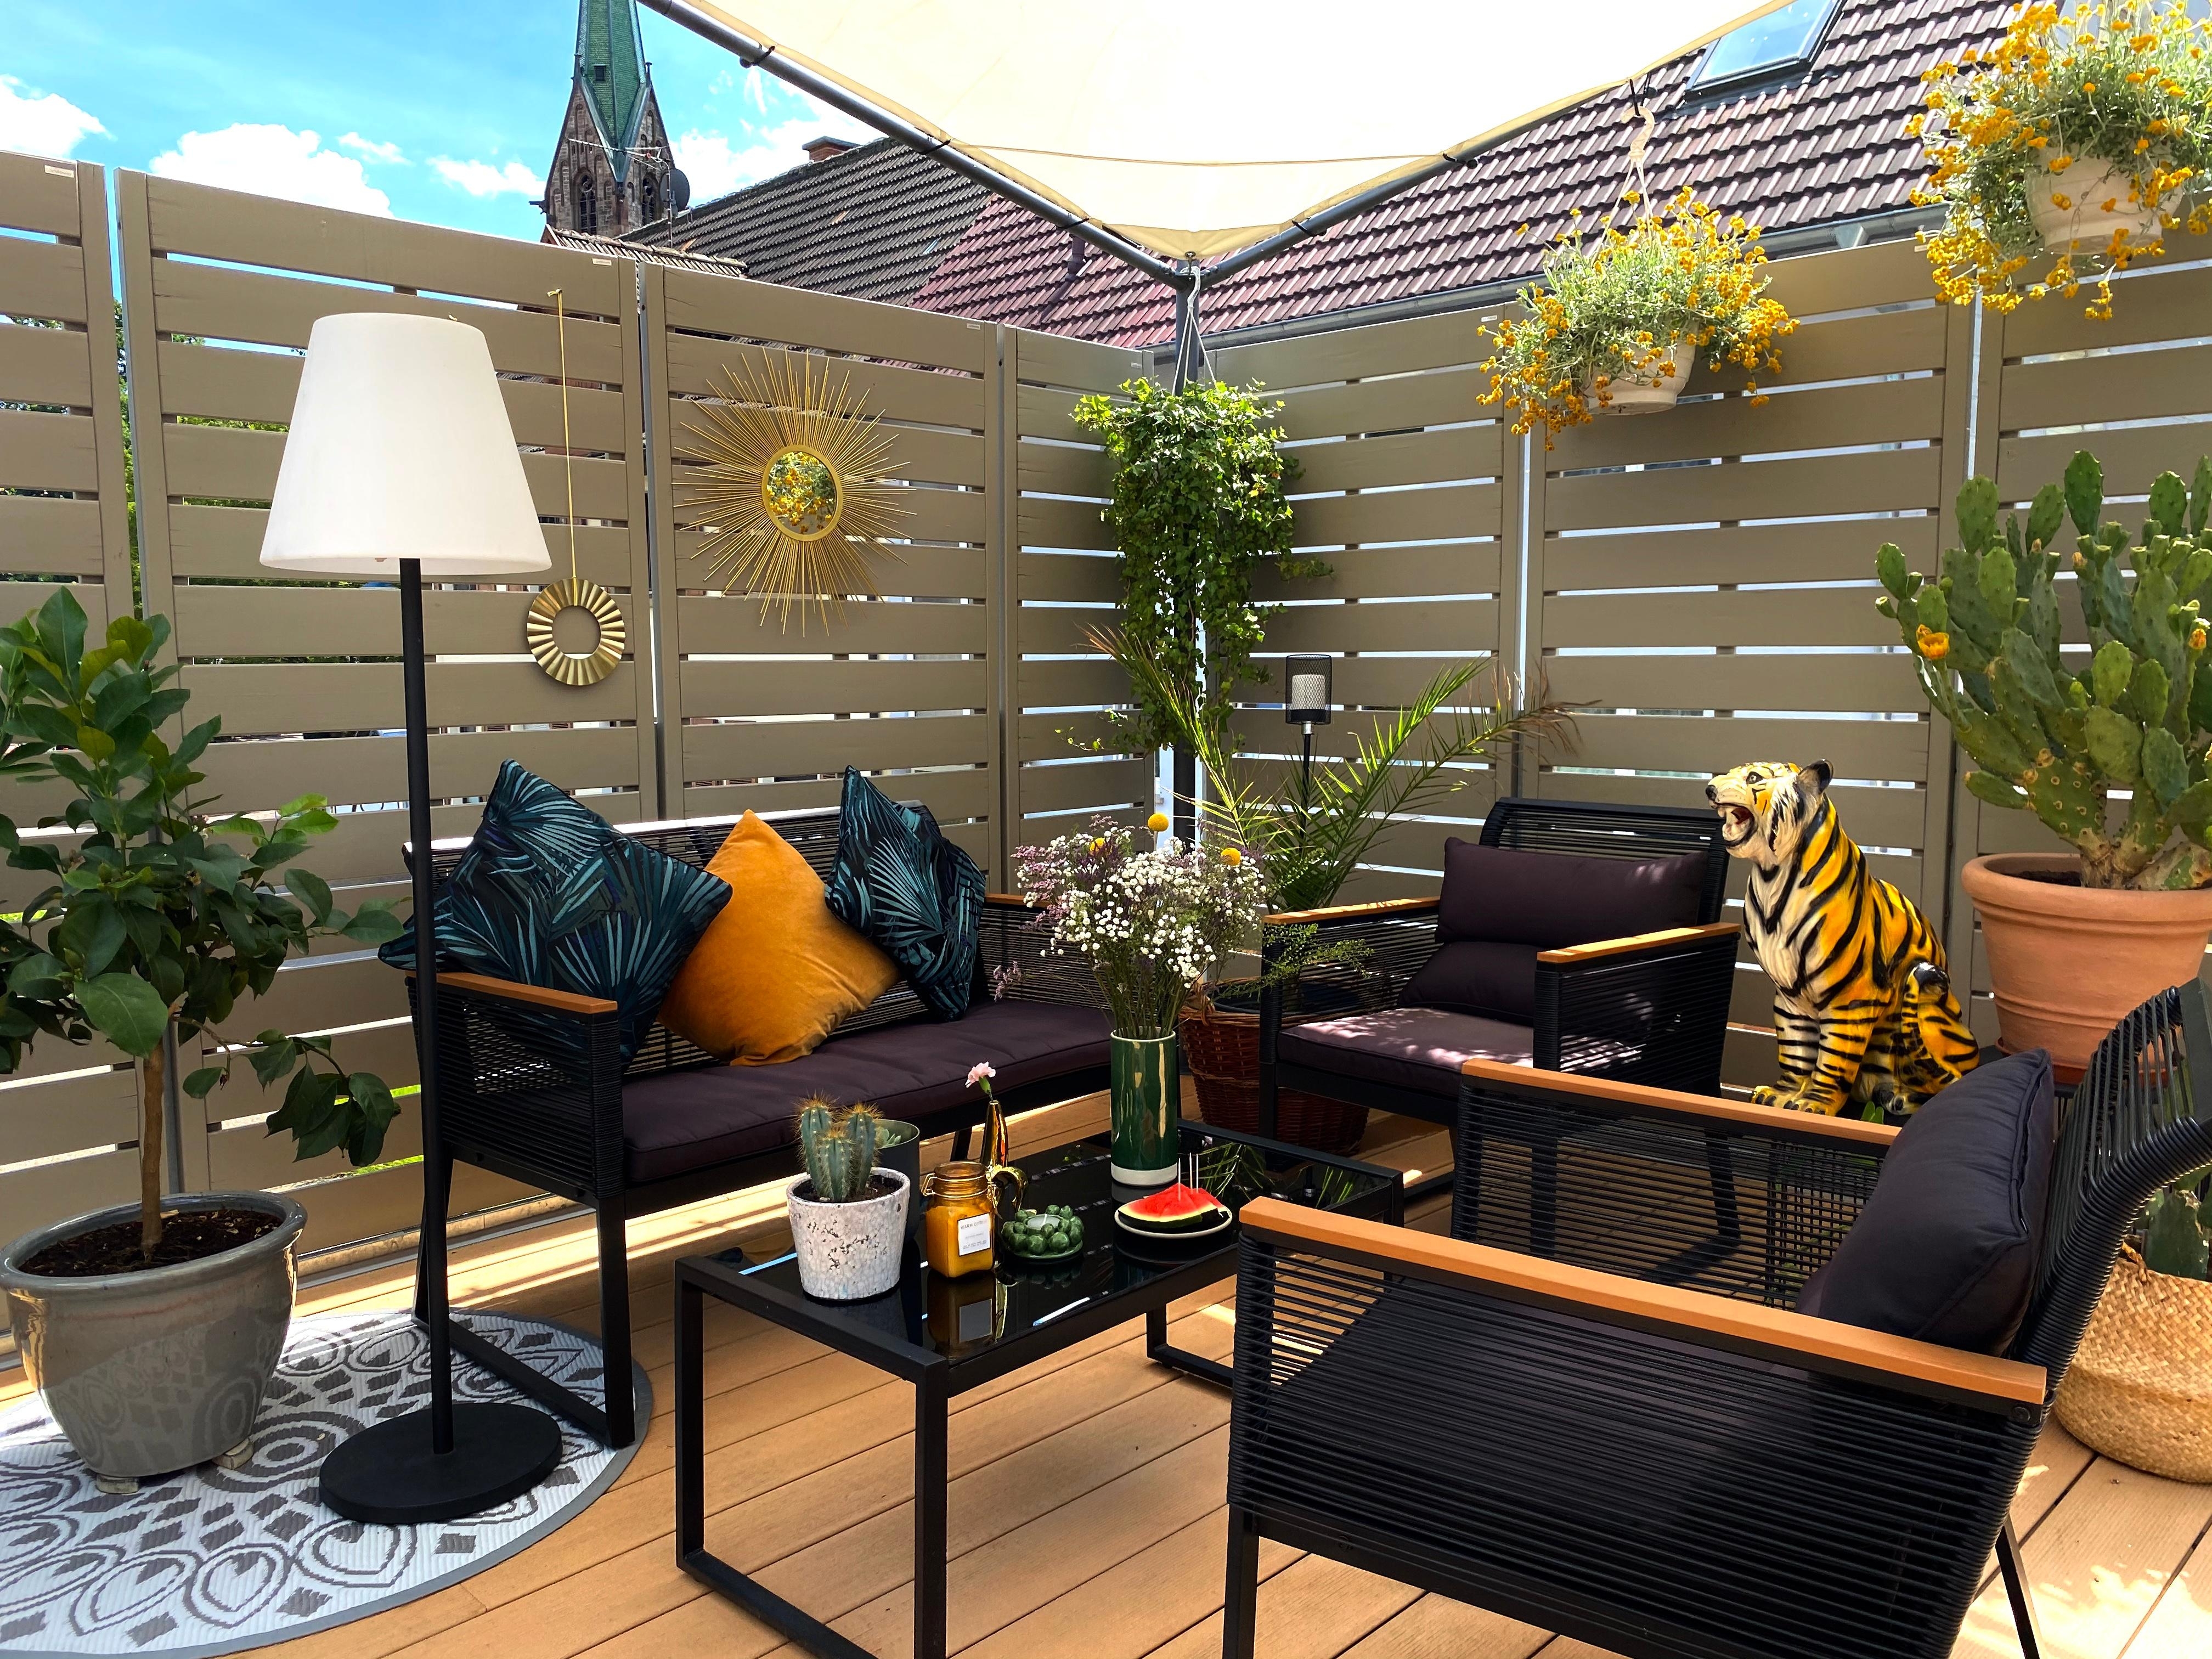 Terrassen Dschungel
#terrasse #urbanjungle #pflanzen #kakteen #staycation #urlaubzuhause 